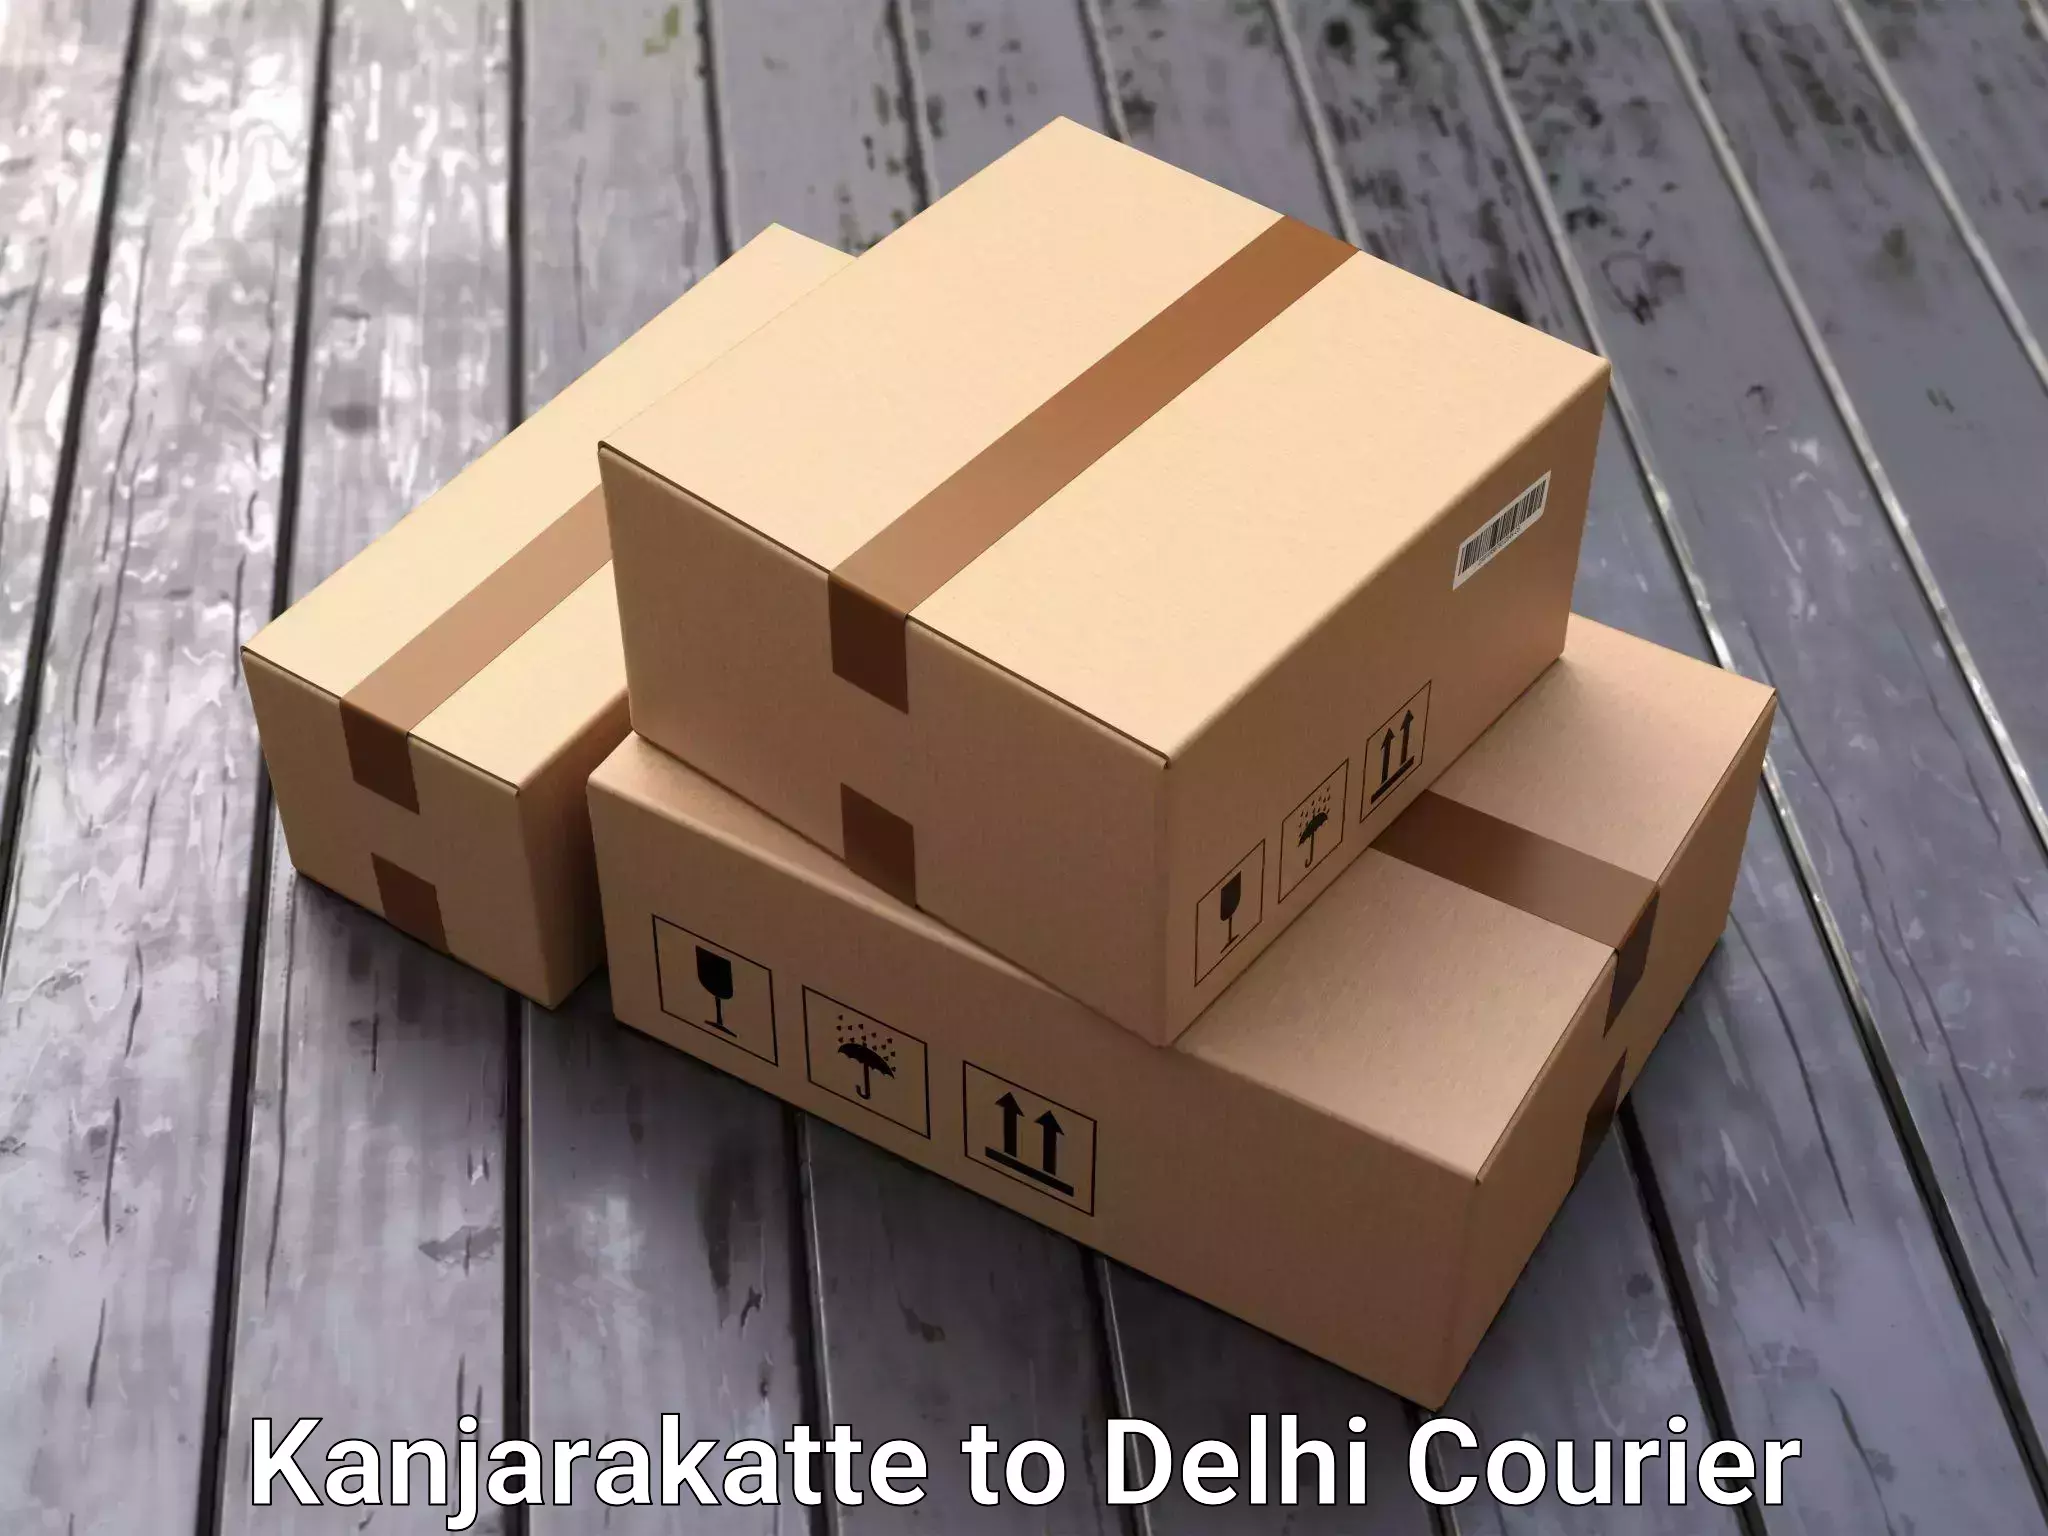 Cost-effective moving solutions Kanjarakatte to IIT Delhi